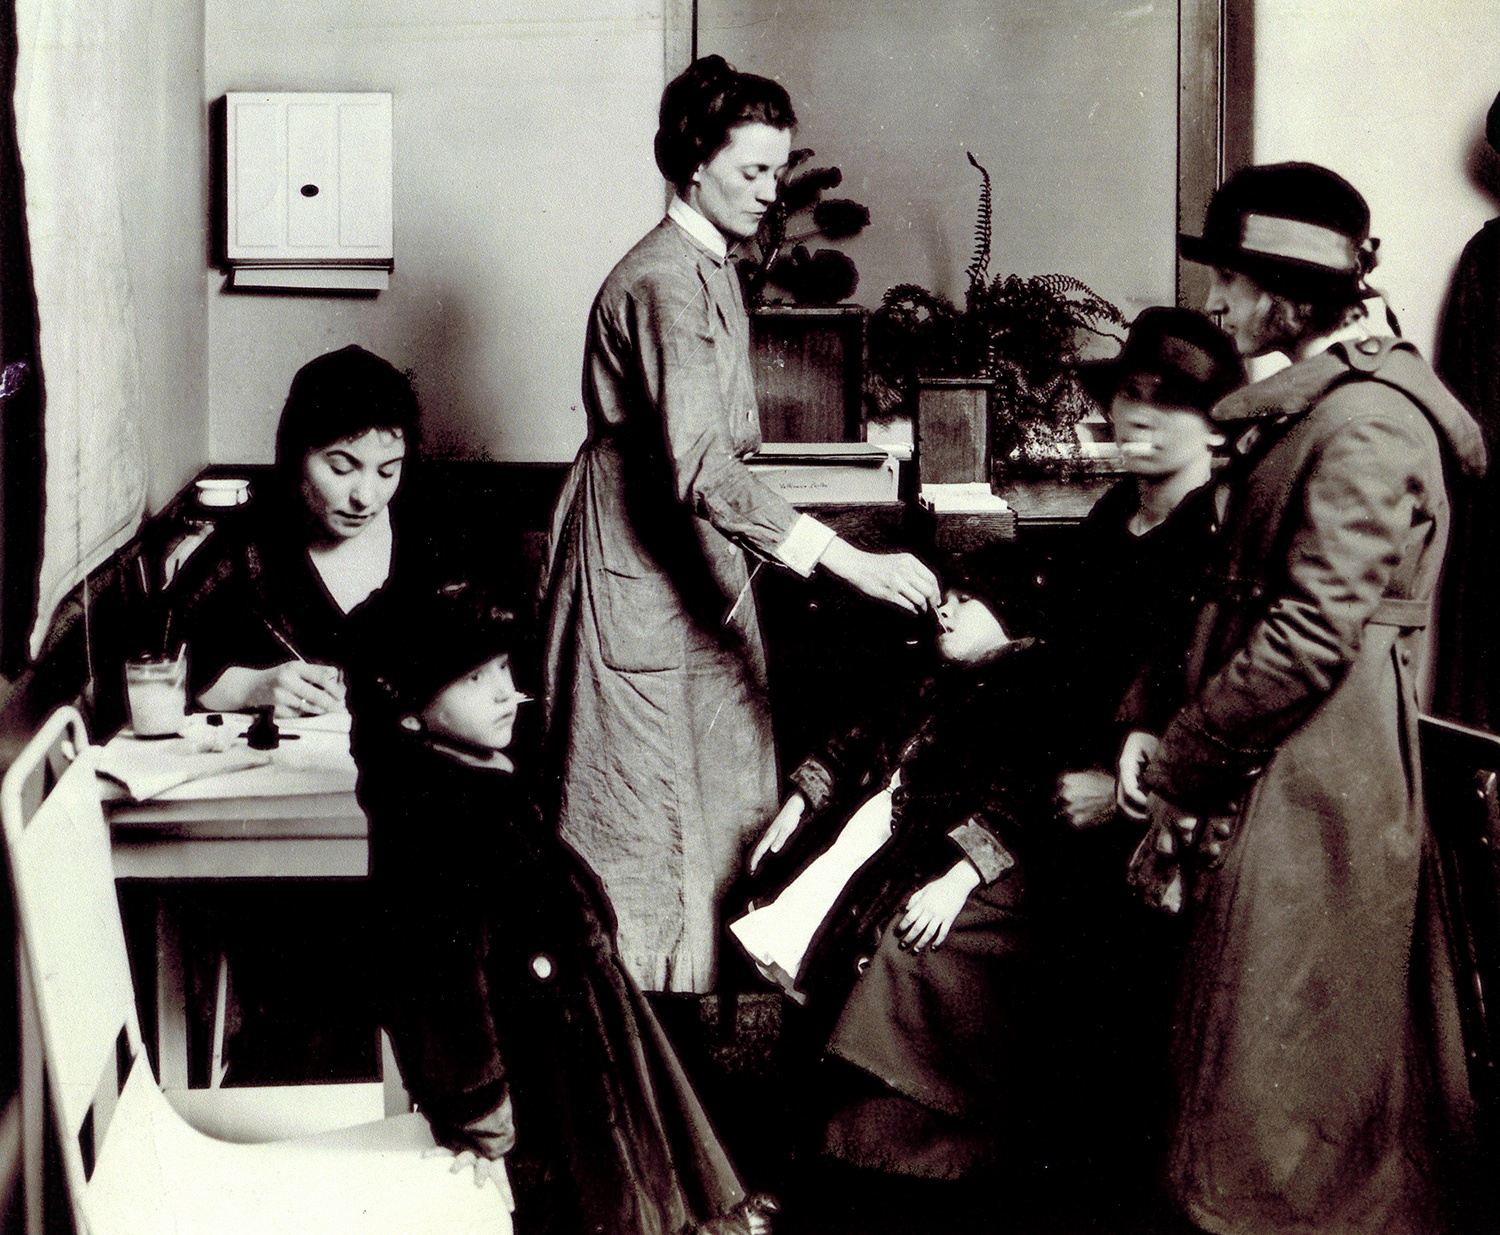 Tuberculosis Hospital of Pittsburgh dispensary, c. 1910.